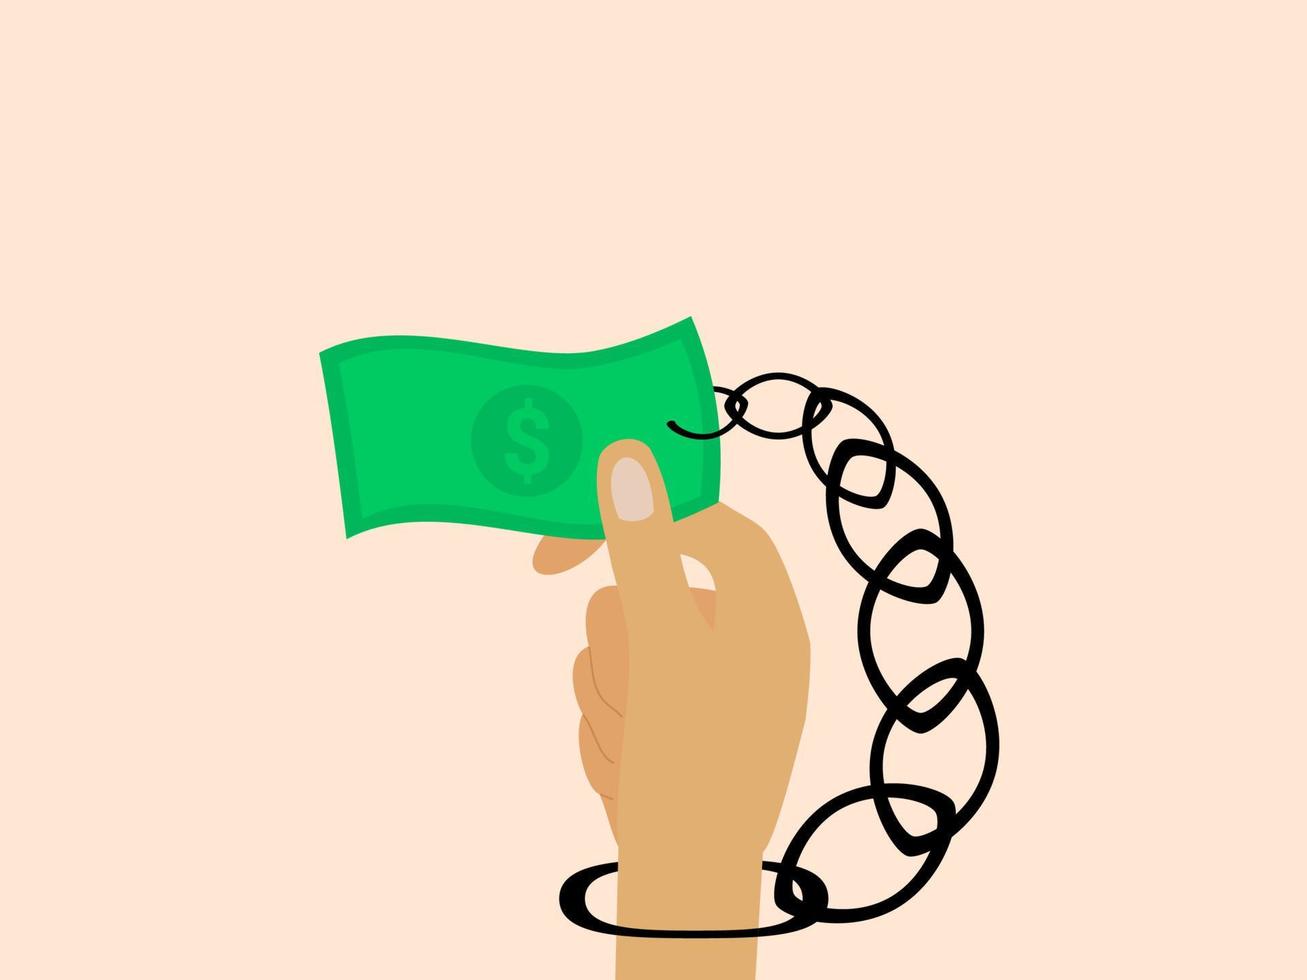 design plat d'illustration vectorielle anti-corruption vecteur